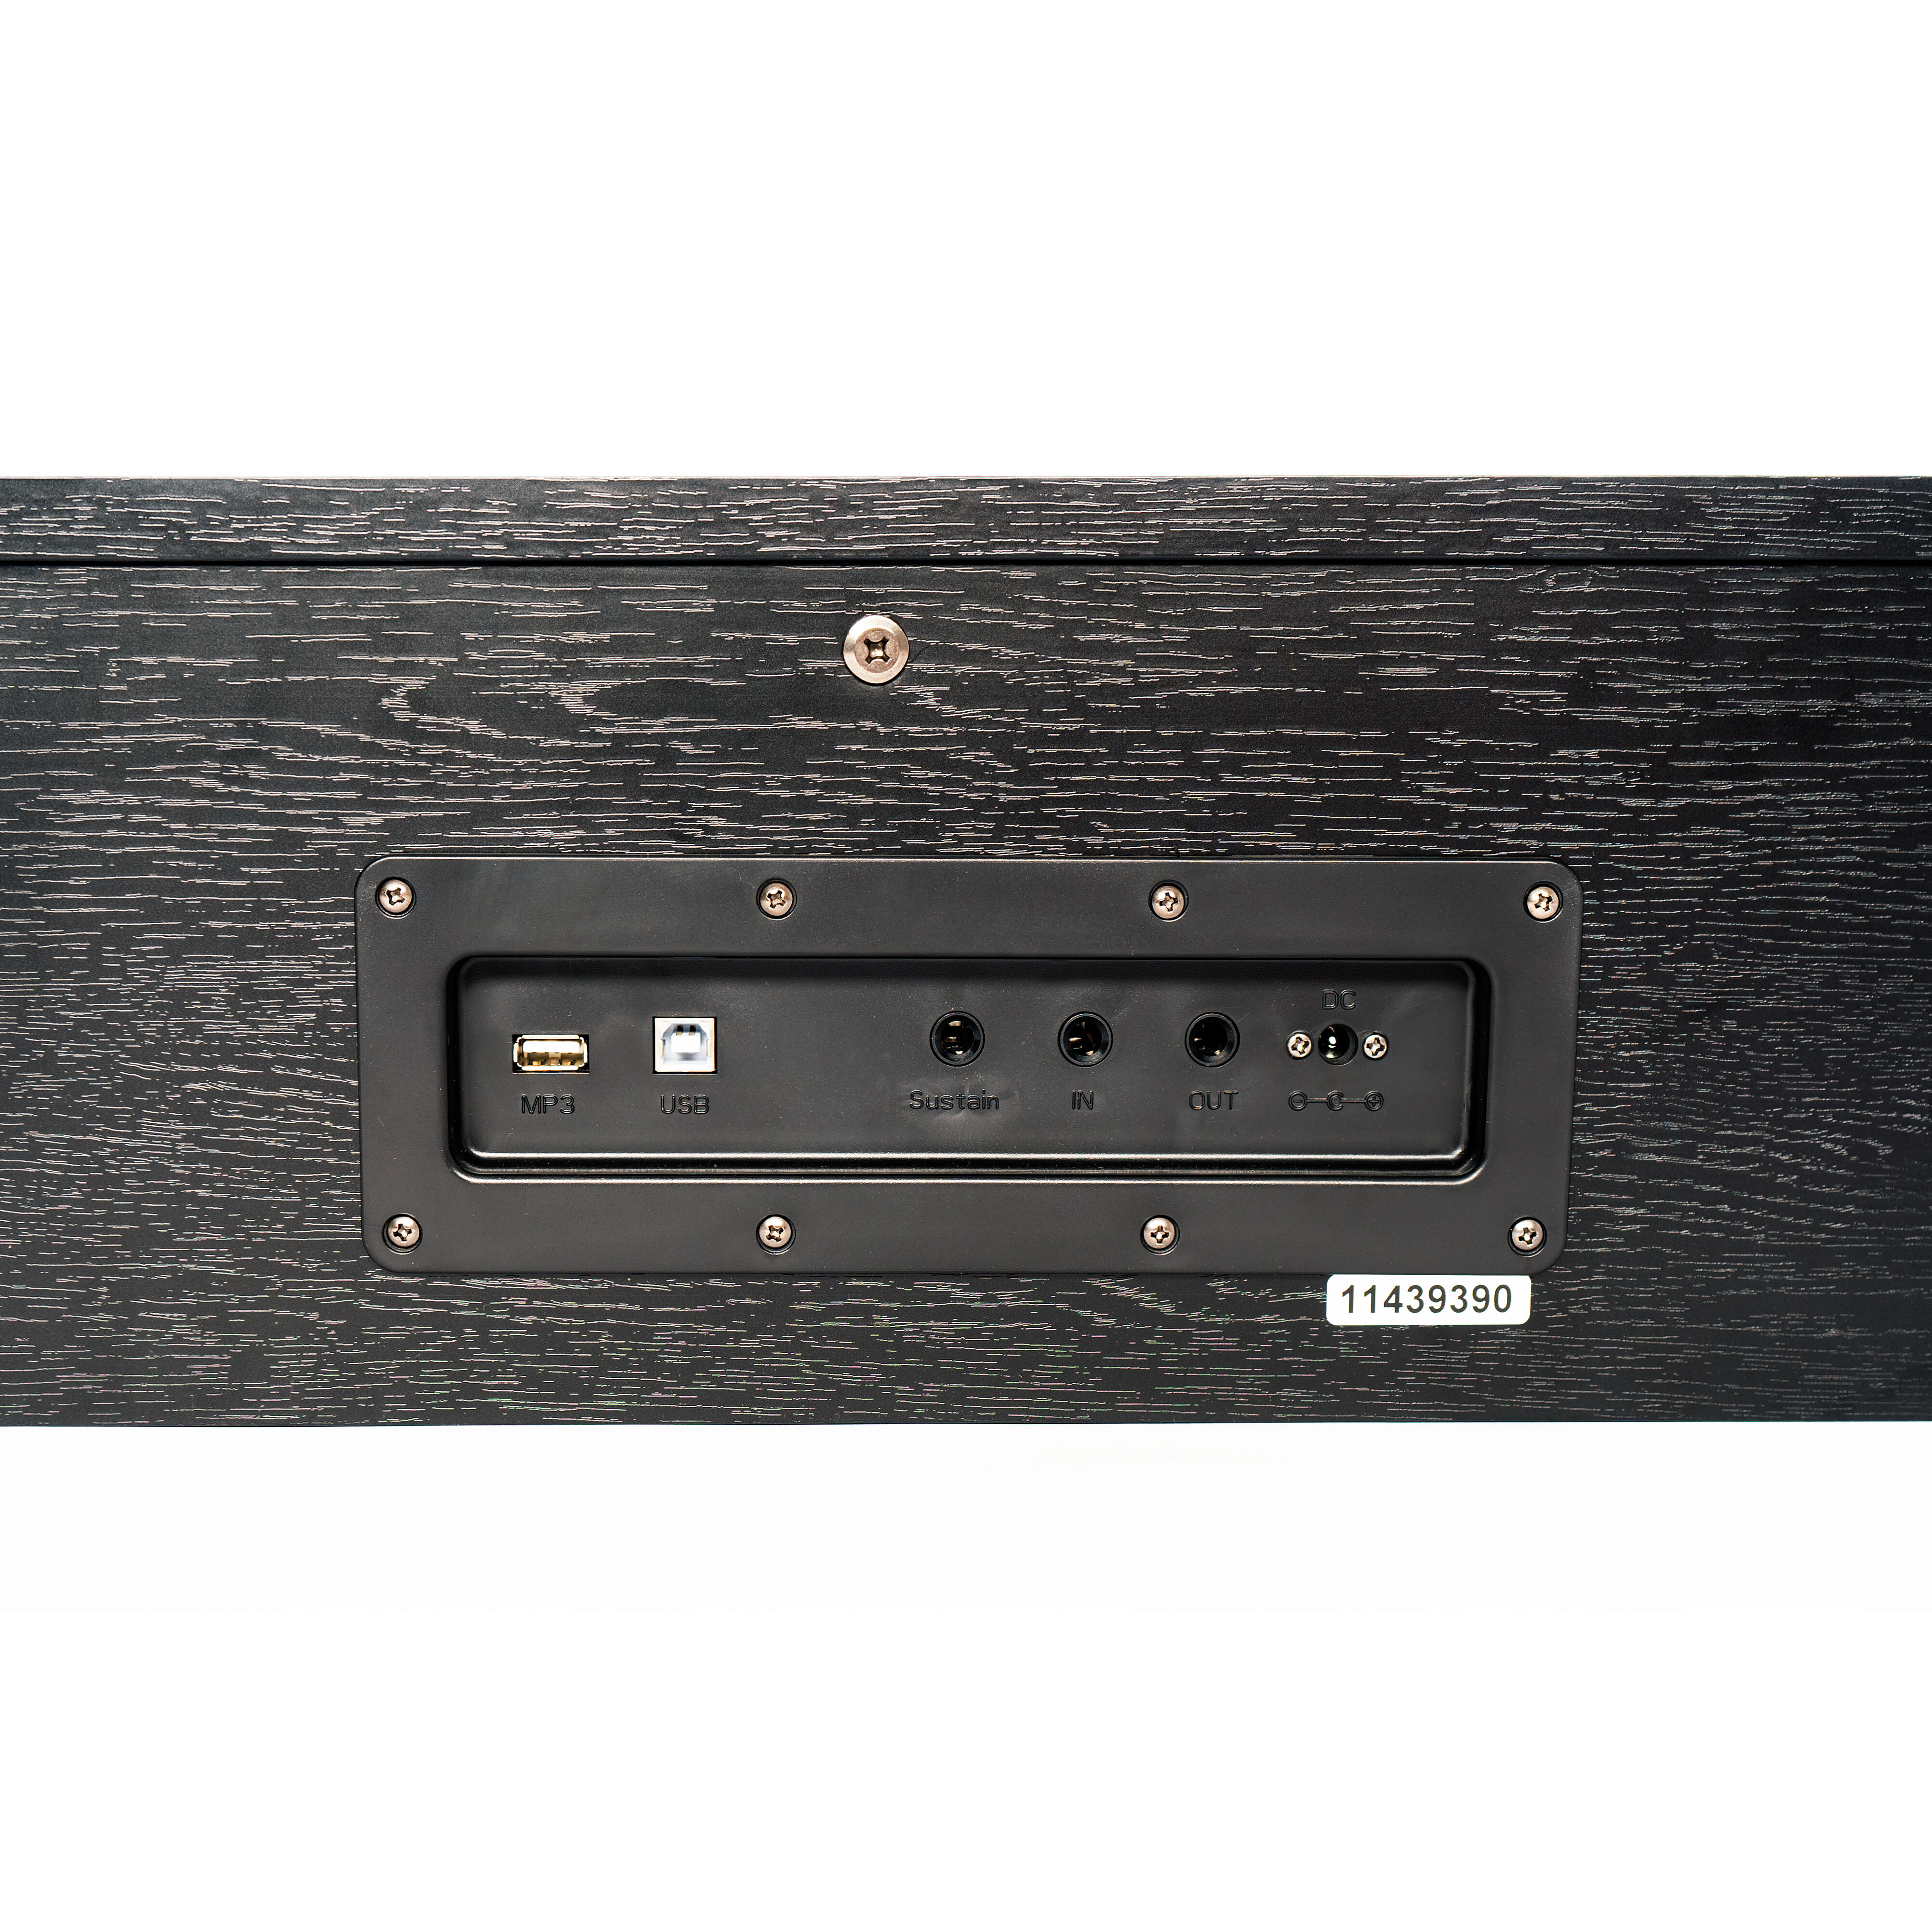 Цифровое пианино Grace CP-150 BK - черный наушники в подарок